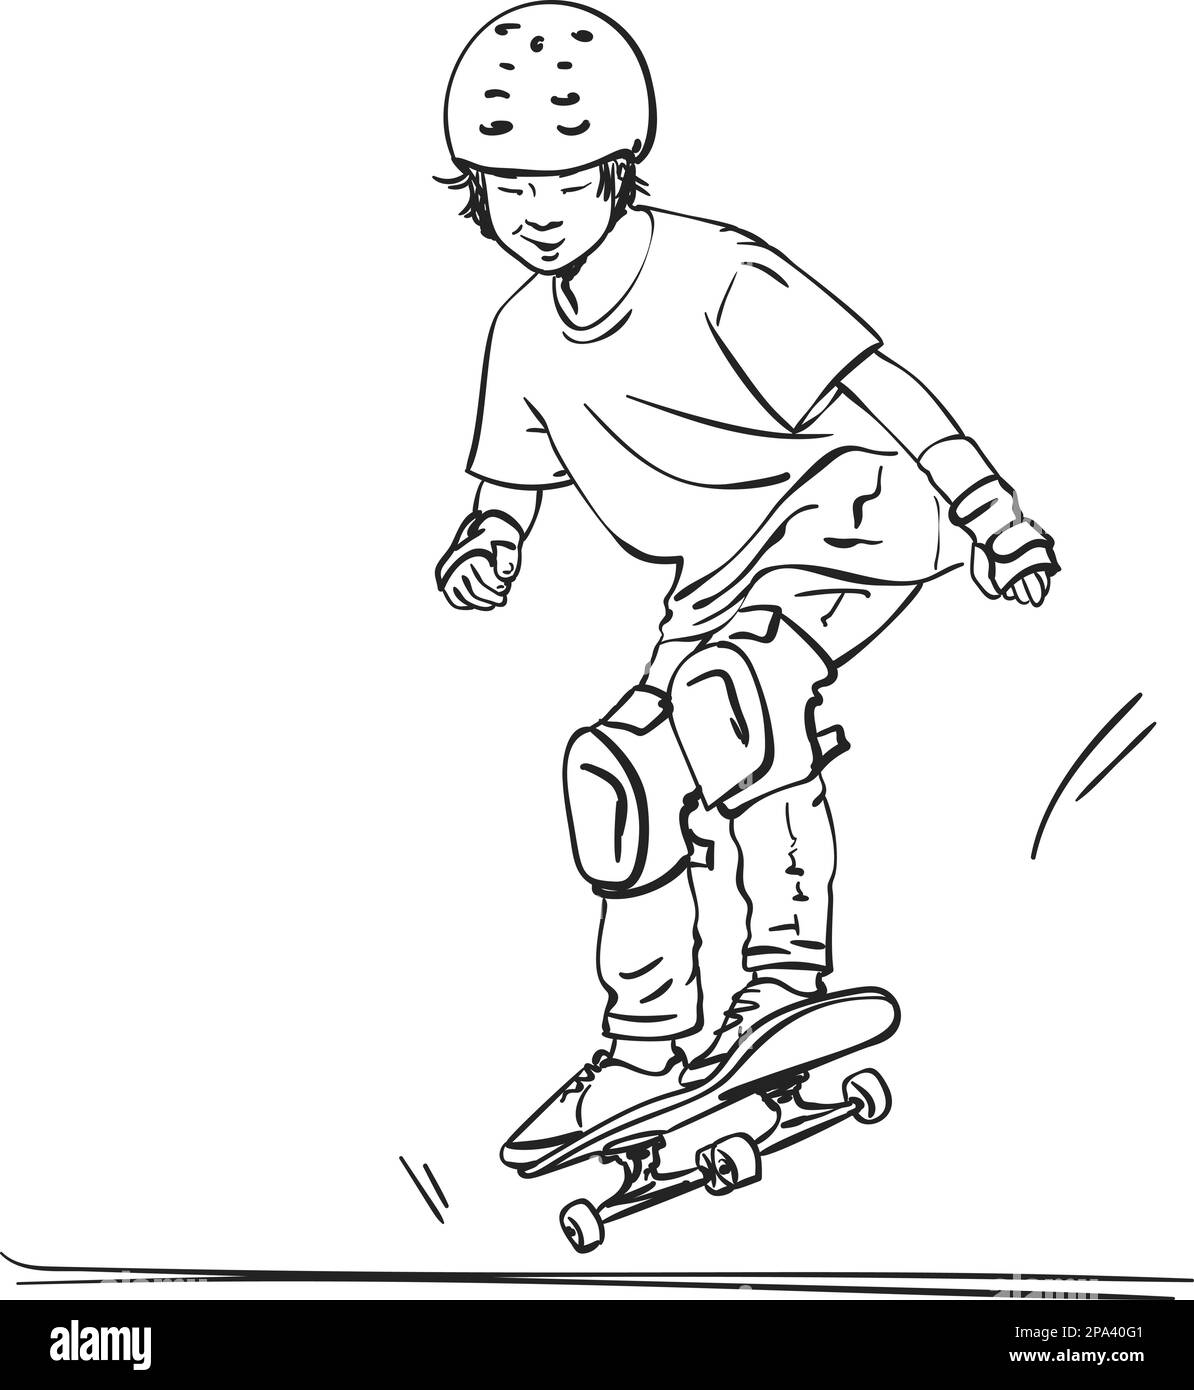 Dessin d'un skate asiatique pour garçon en protection totale et saut de casque sur planche à roulettes, dessin à la main, illustration vectorielle d'art isolée sur fond blanc Illustration de Vecteur